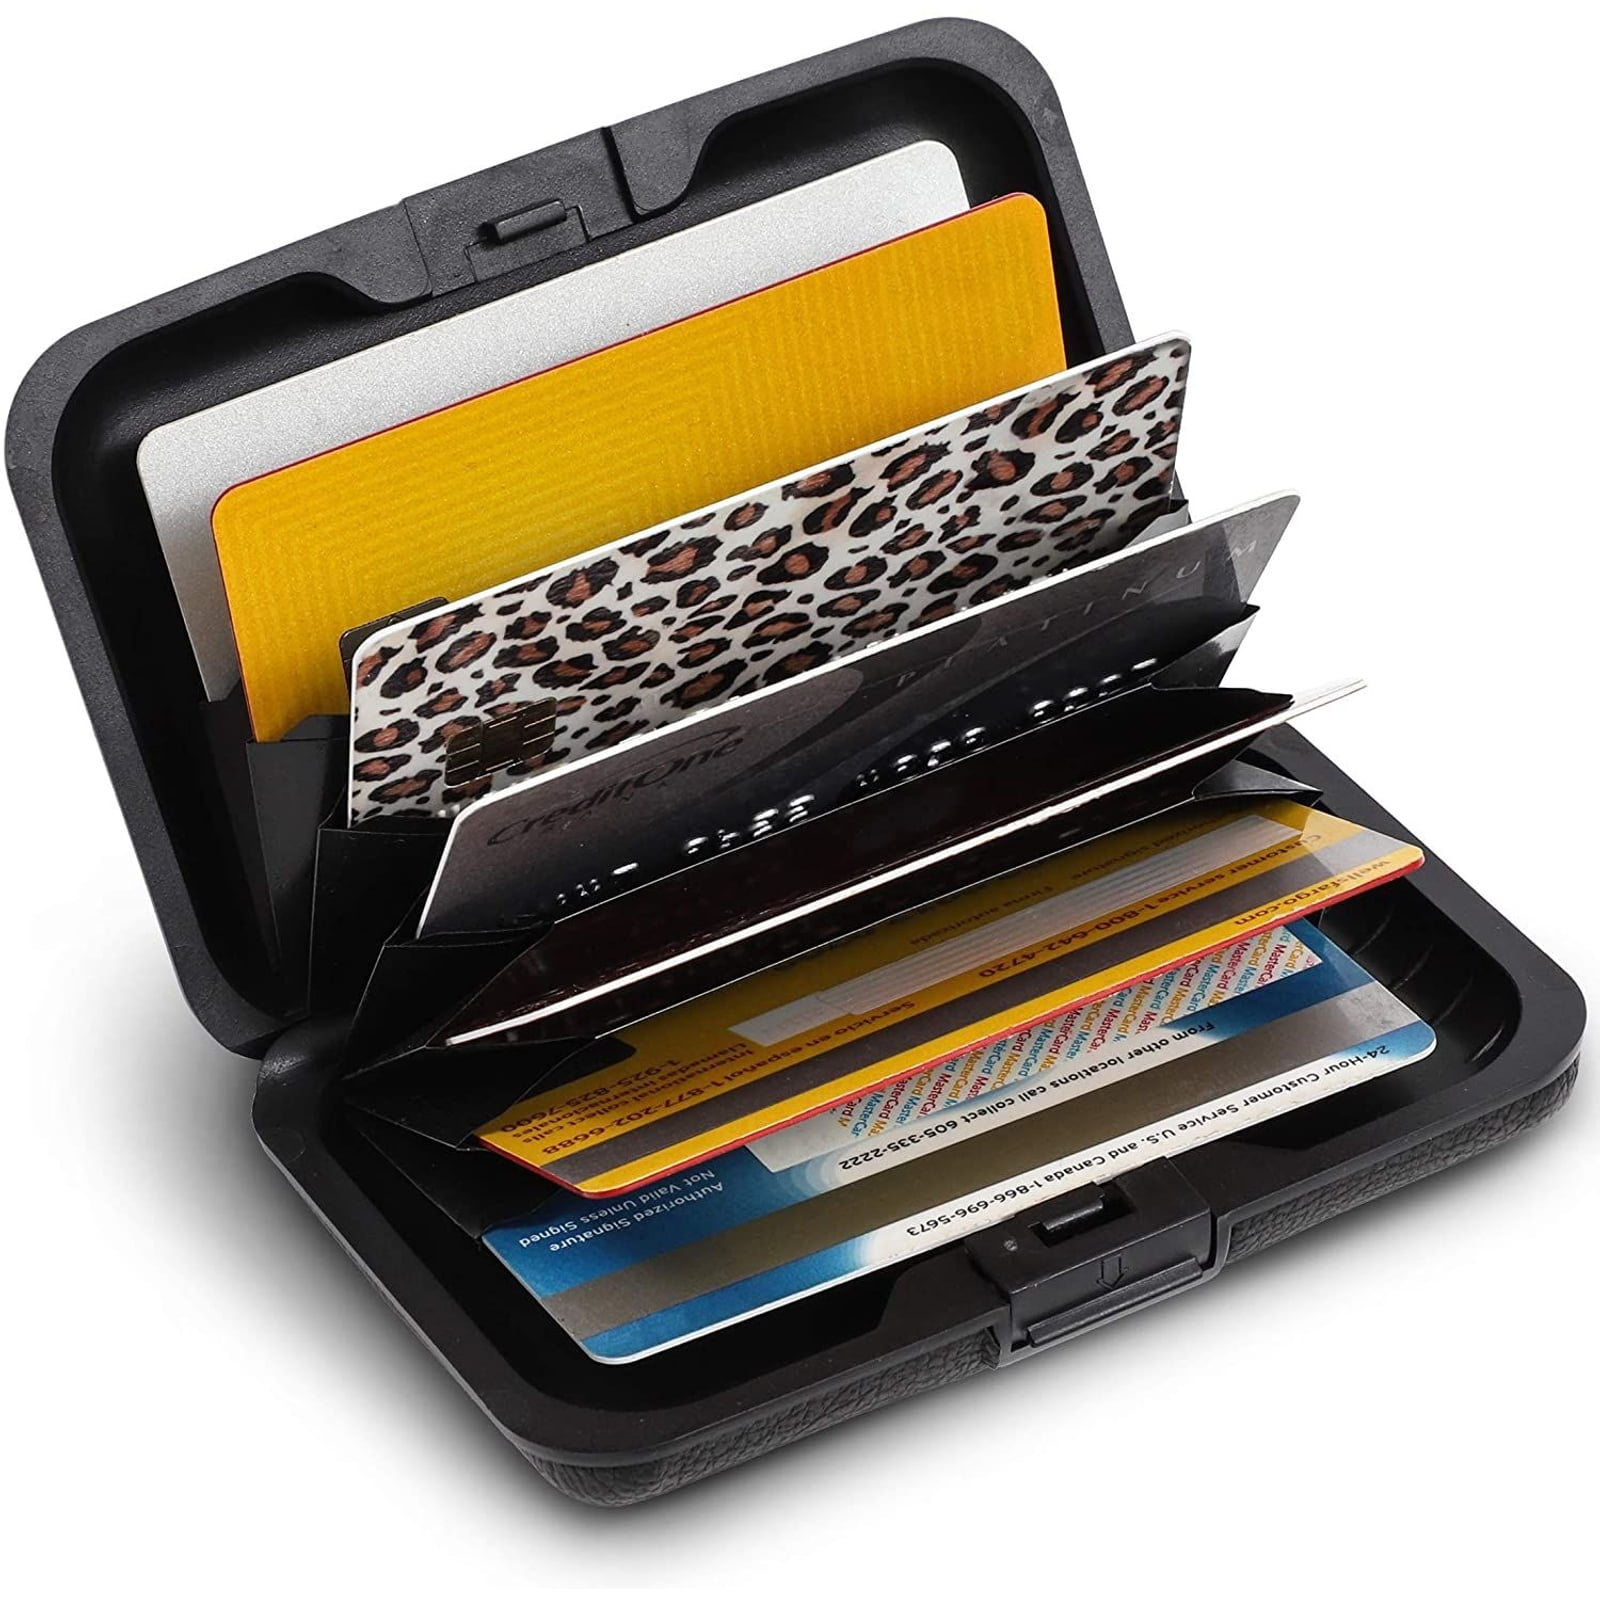 card holder 2021 plastic cards pocket pocket card holder card case holder pocket wallet case for credit cards Card case card pocket